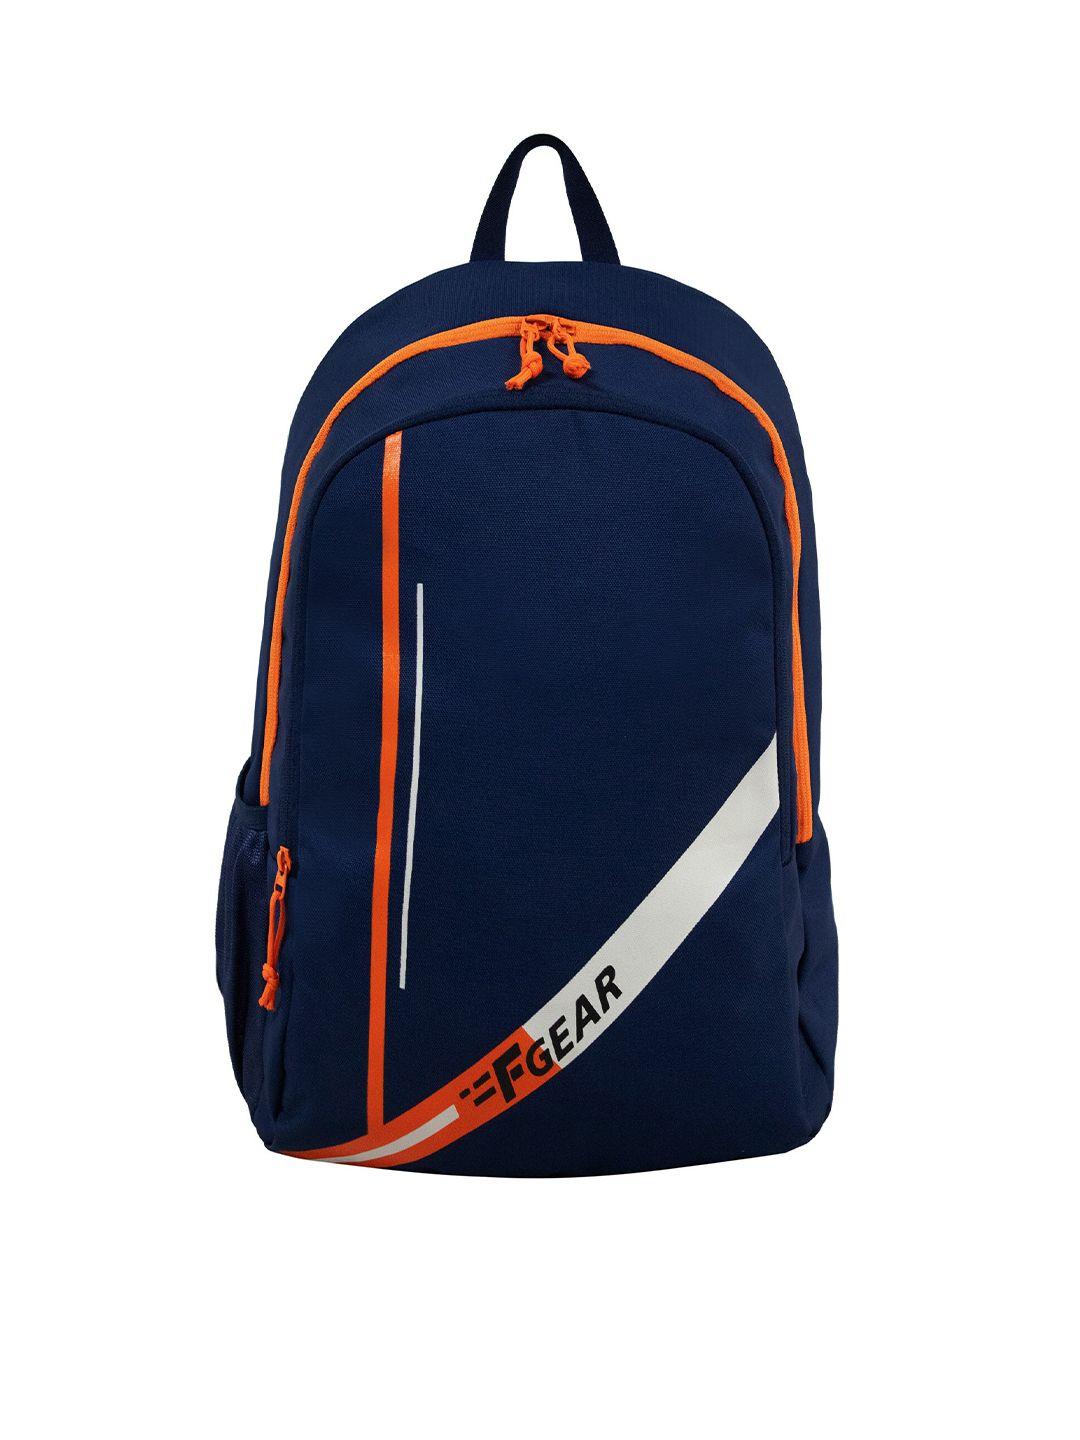 f gear kids navy blue & orange printed backpack